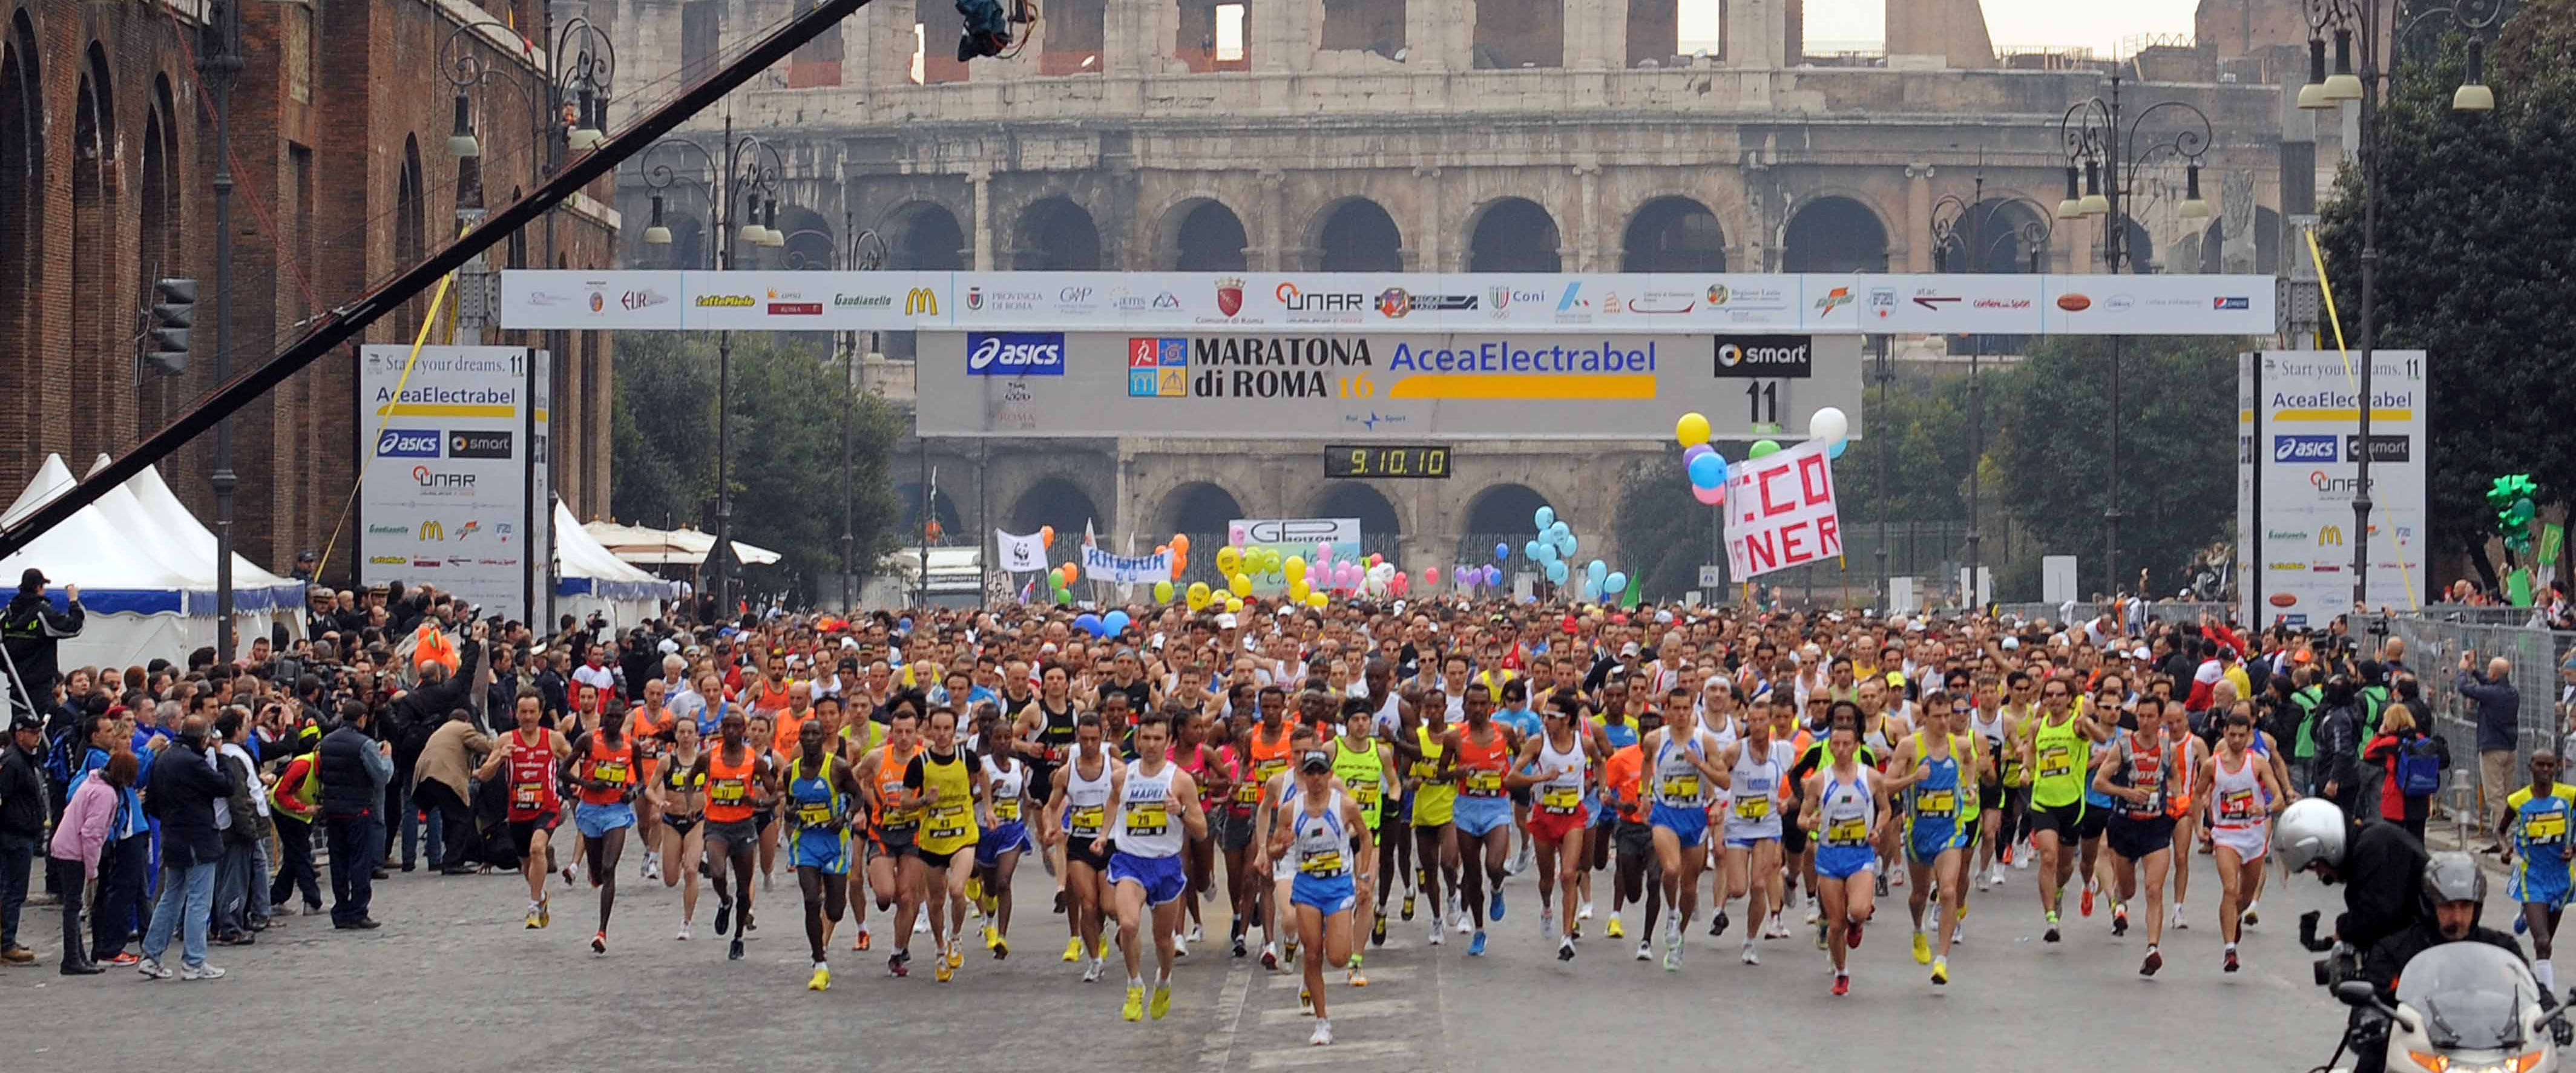 Acea Run Rome The Marathon sarà Campionato Italiano Fispe